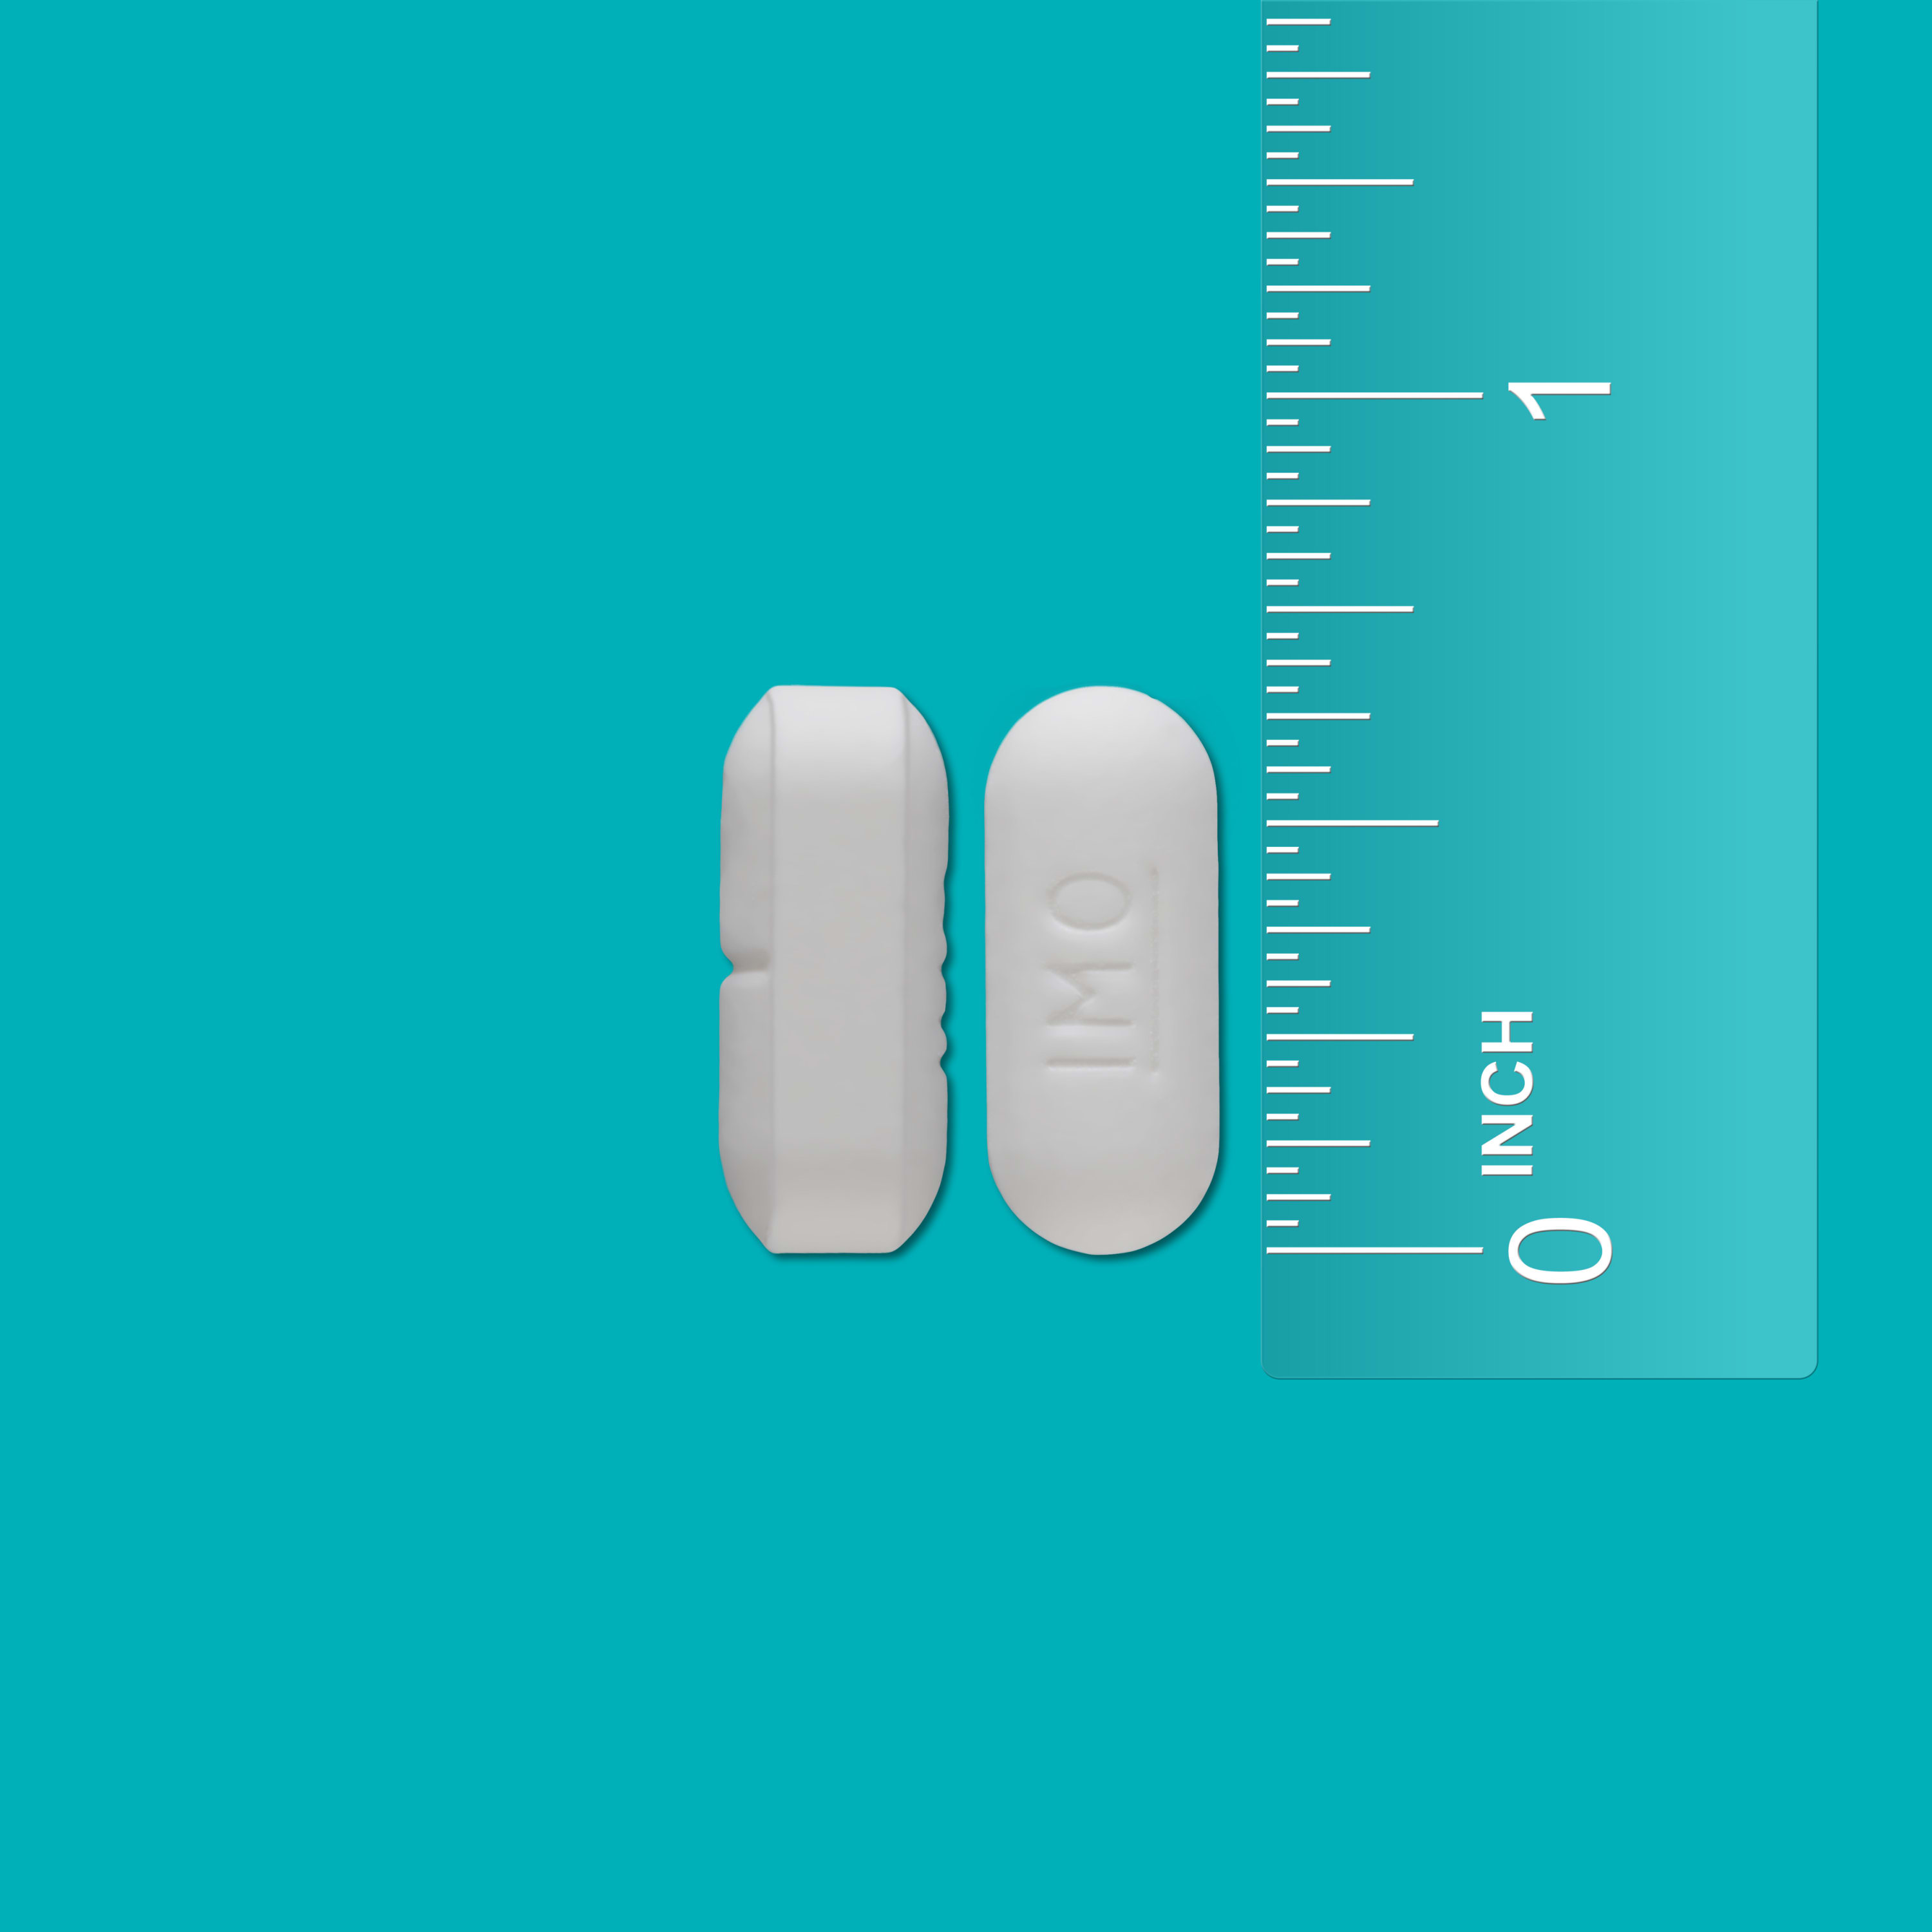 Imodium Multi-Symptom Relief Anti-Diarrheal Medicine Caplets, 12 ct. - image 9 of 13